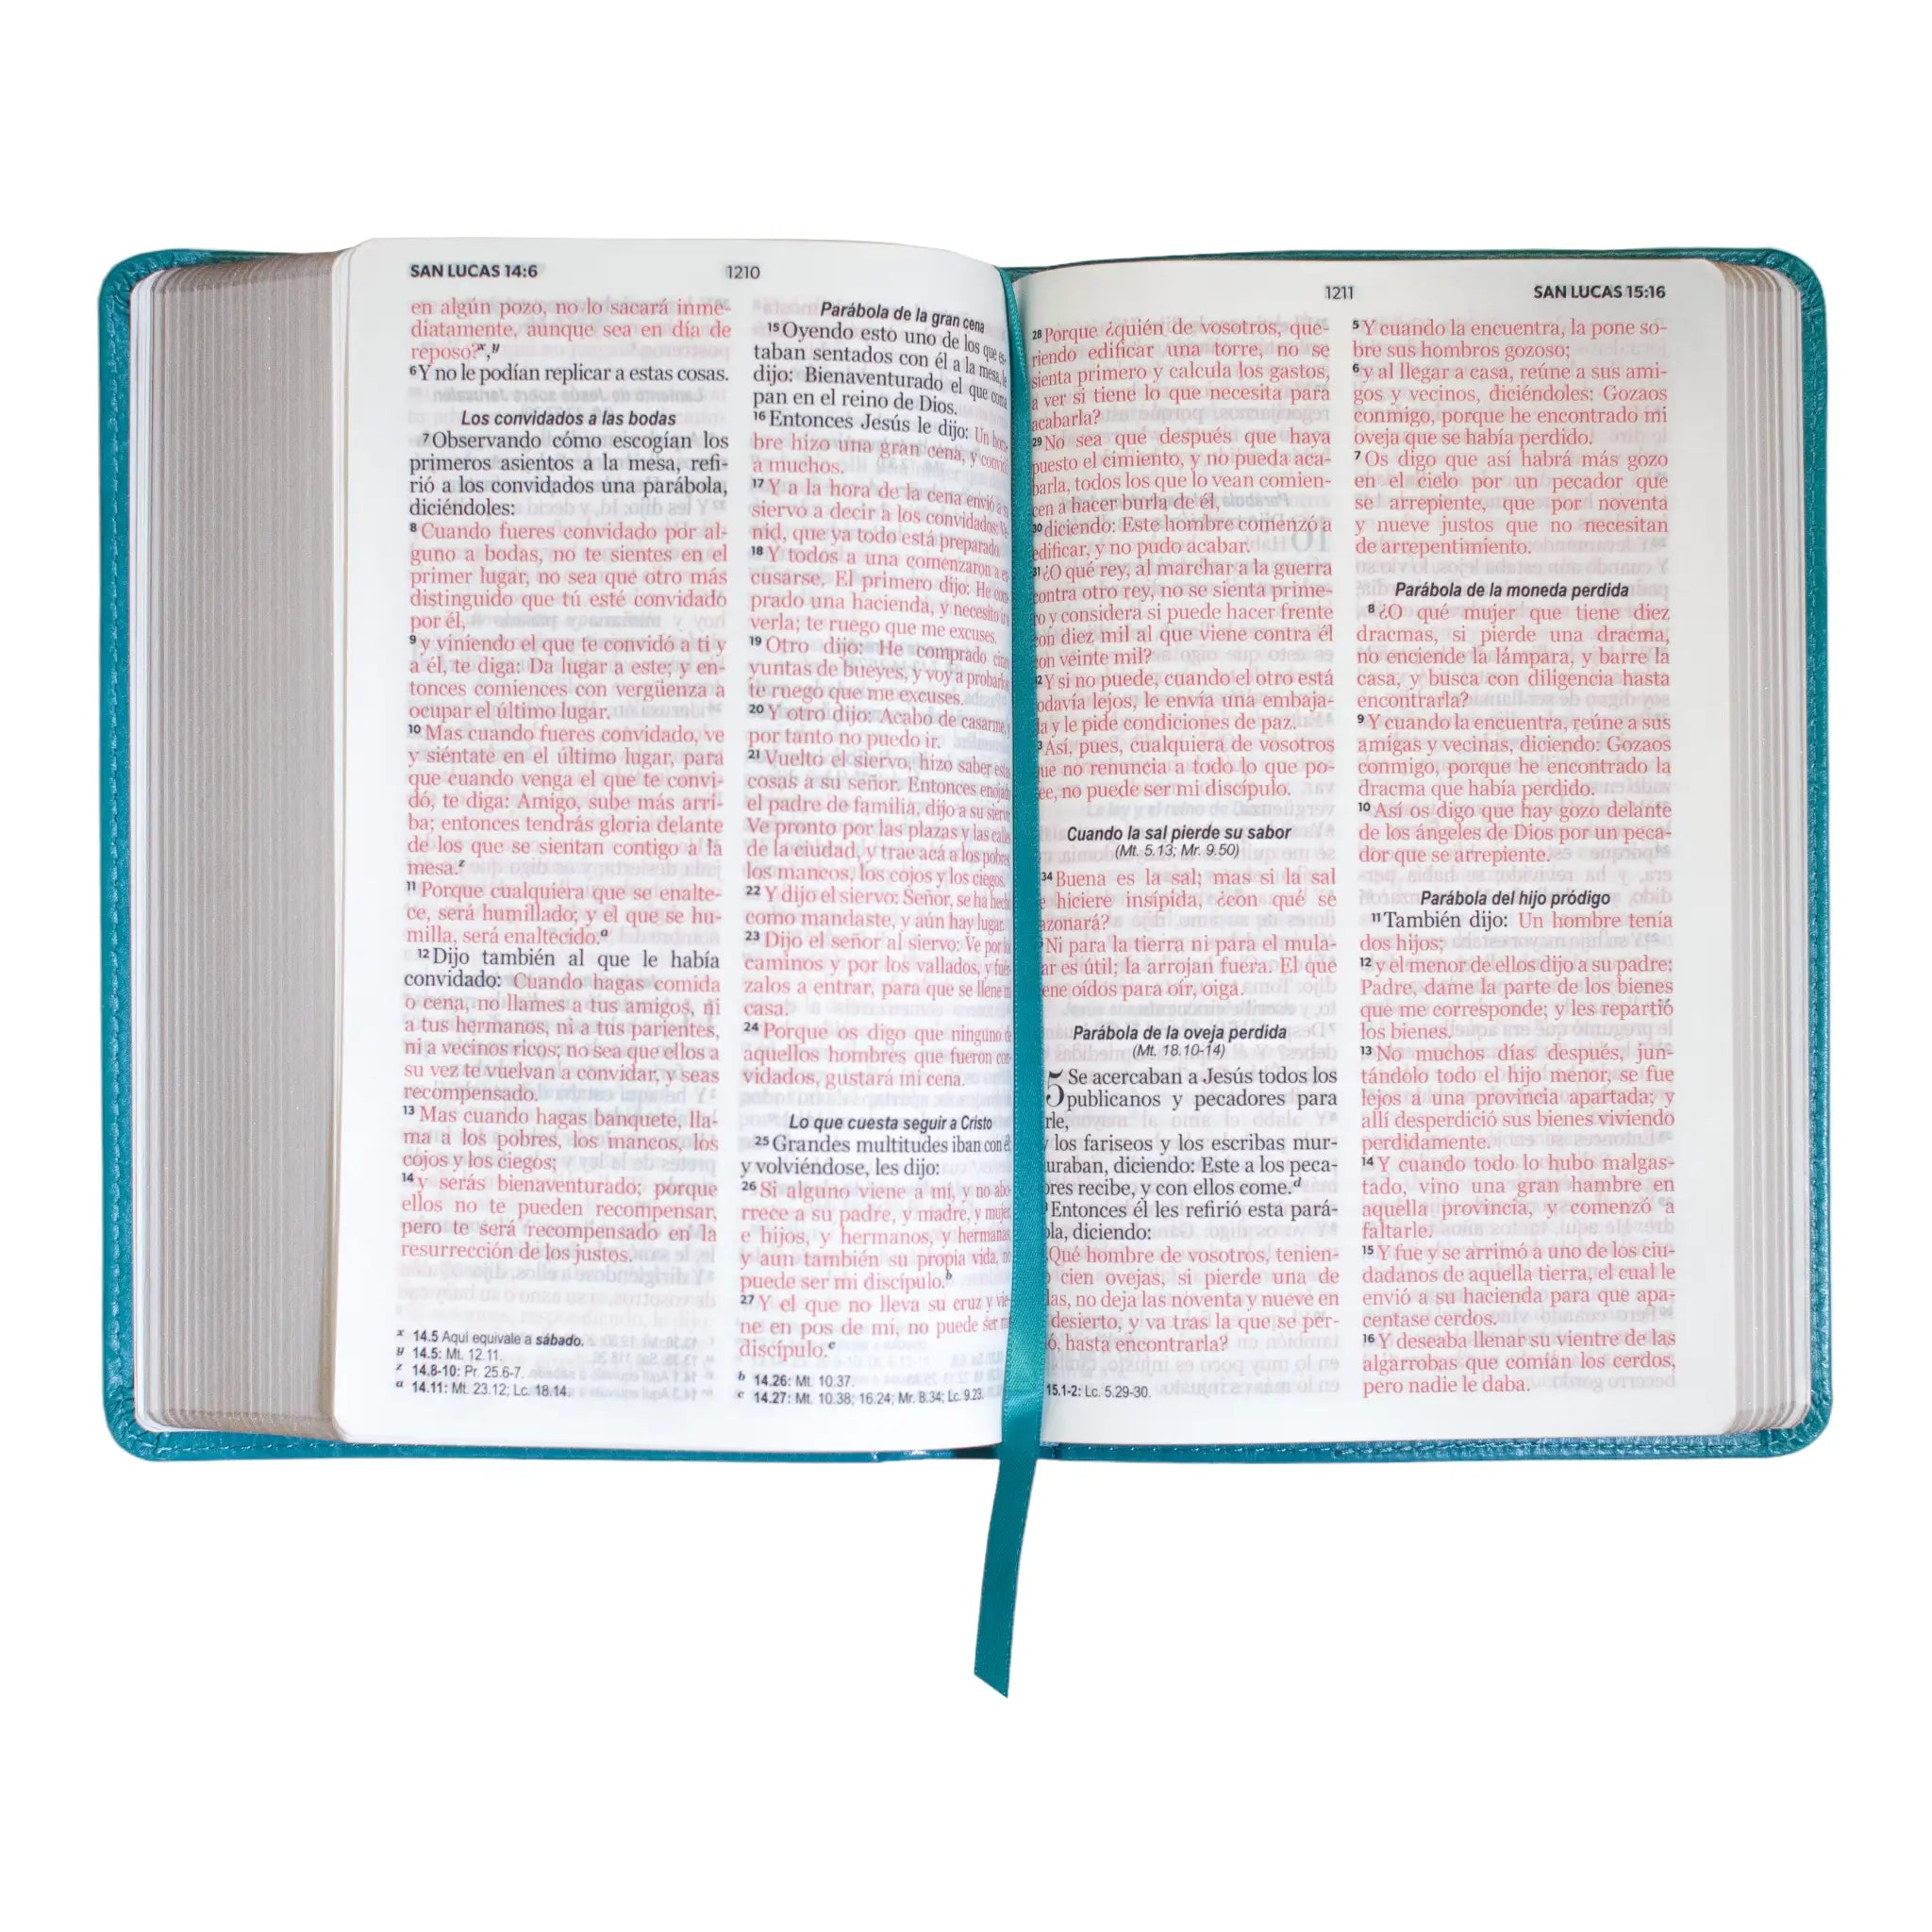 Biblia RVR60 Clásica turquesa